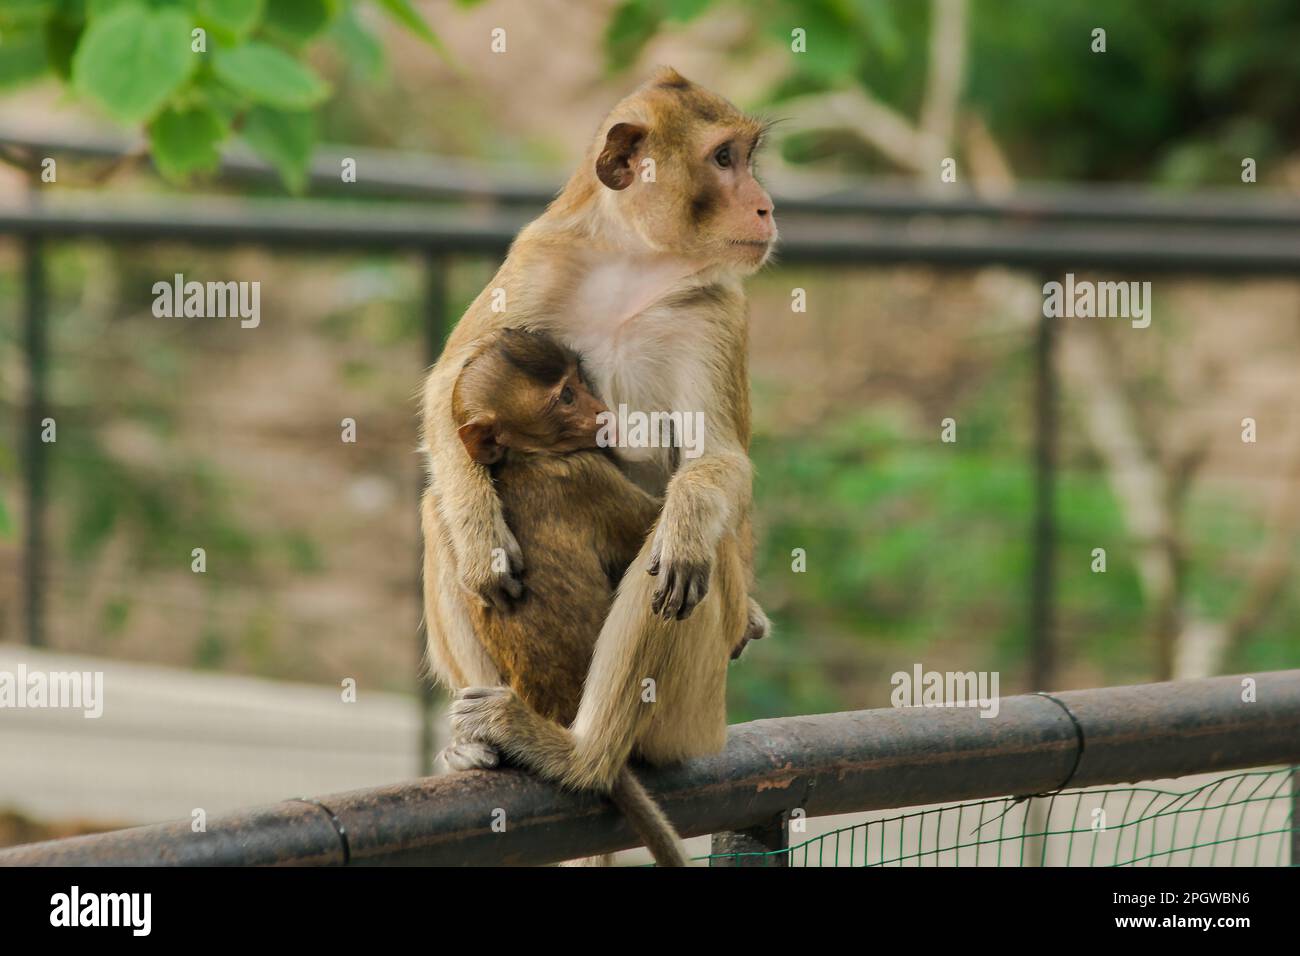 Los monos bebés se alimentan de la leche de la madre sentada. Los monos  bebés se alimentan de la leche de la madre sentada. El mono bebé siempre se  adhiere Fotografía de